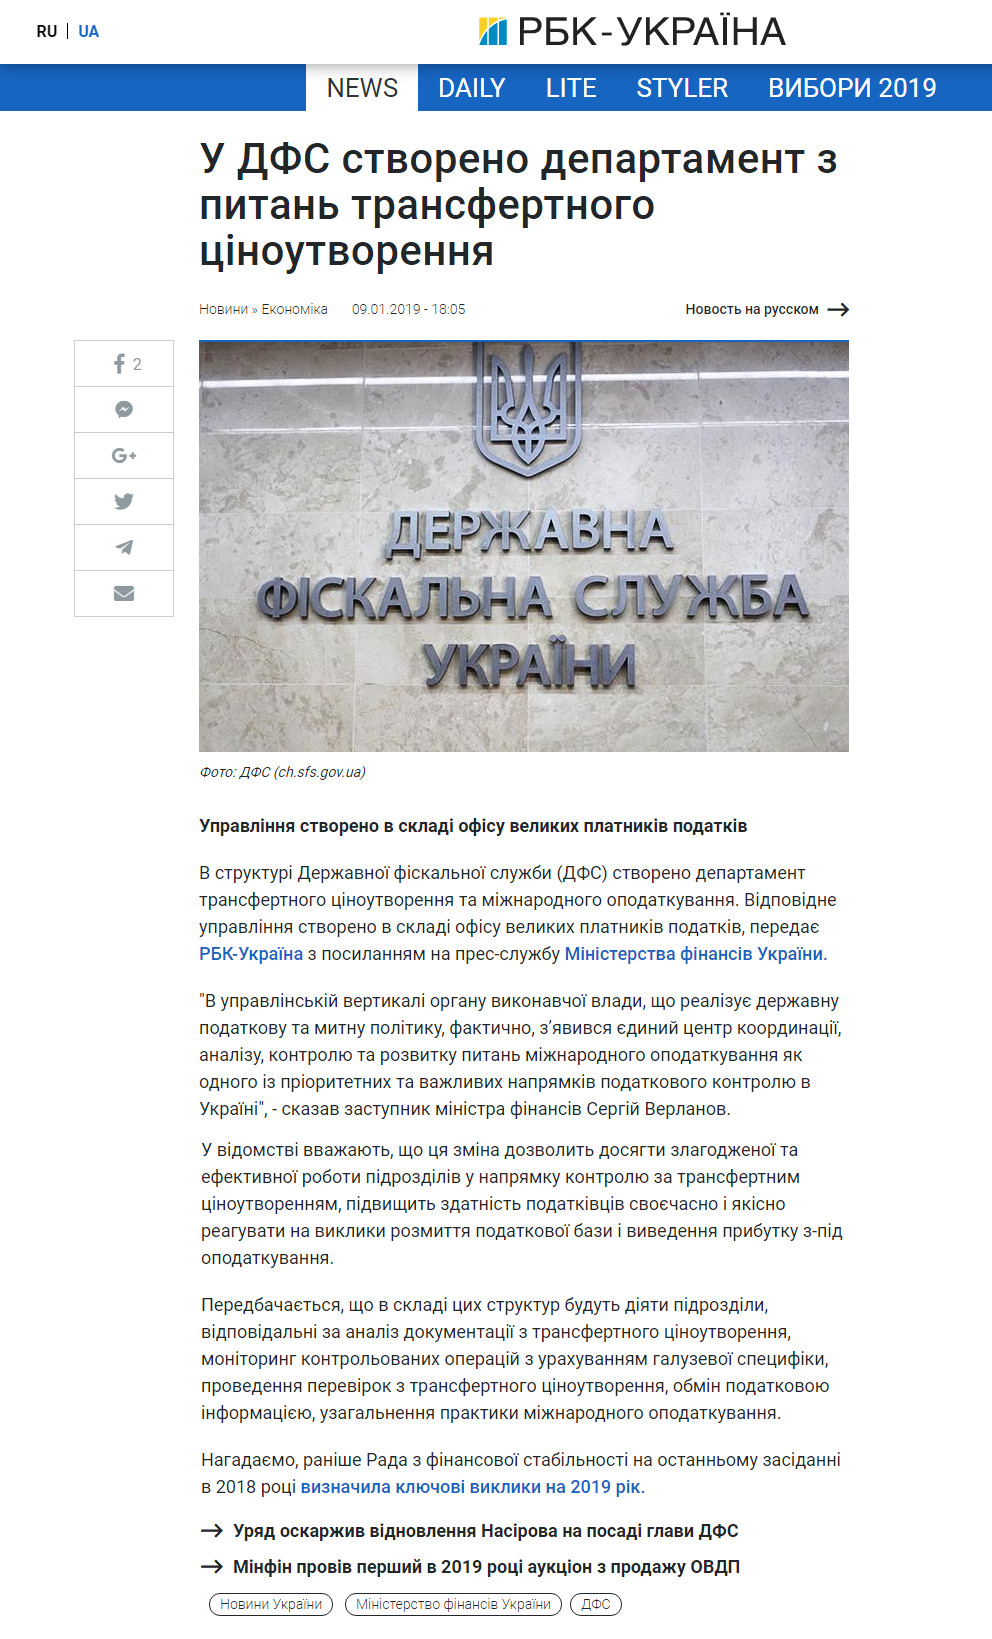 https://www.rbc.ua/ukr/news/gfs-sozdan-departament-voprosam-transfertnogo-1547050050.html